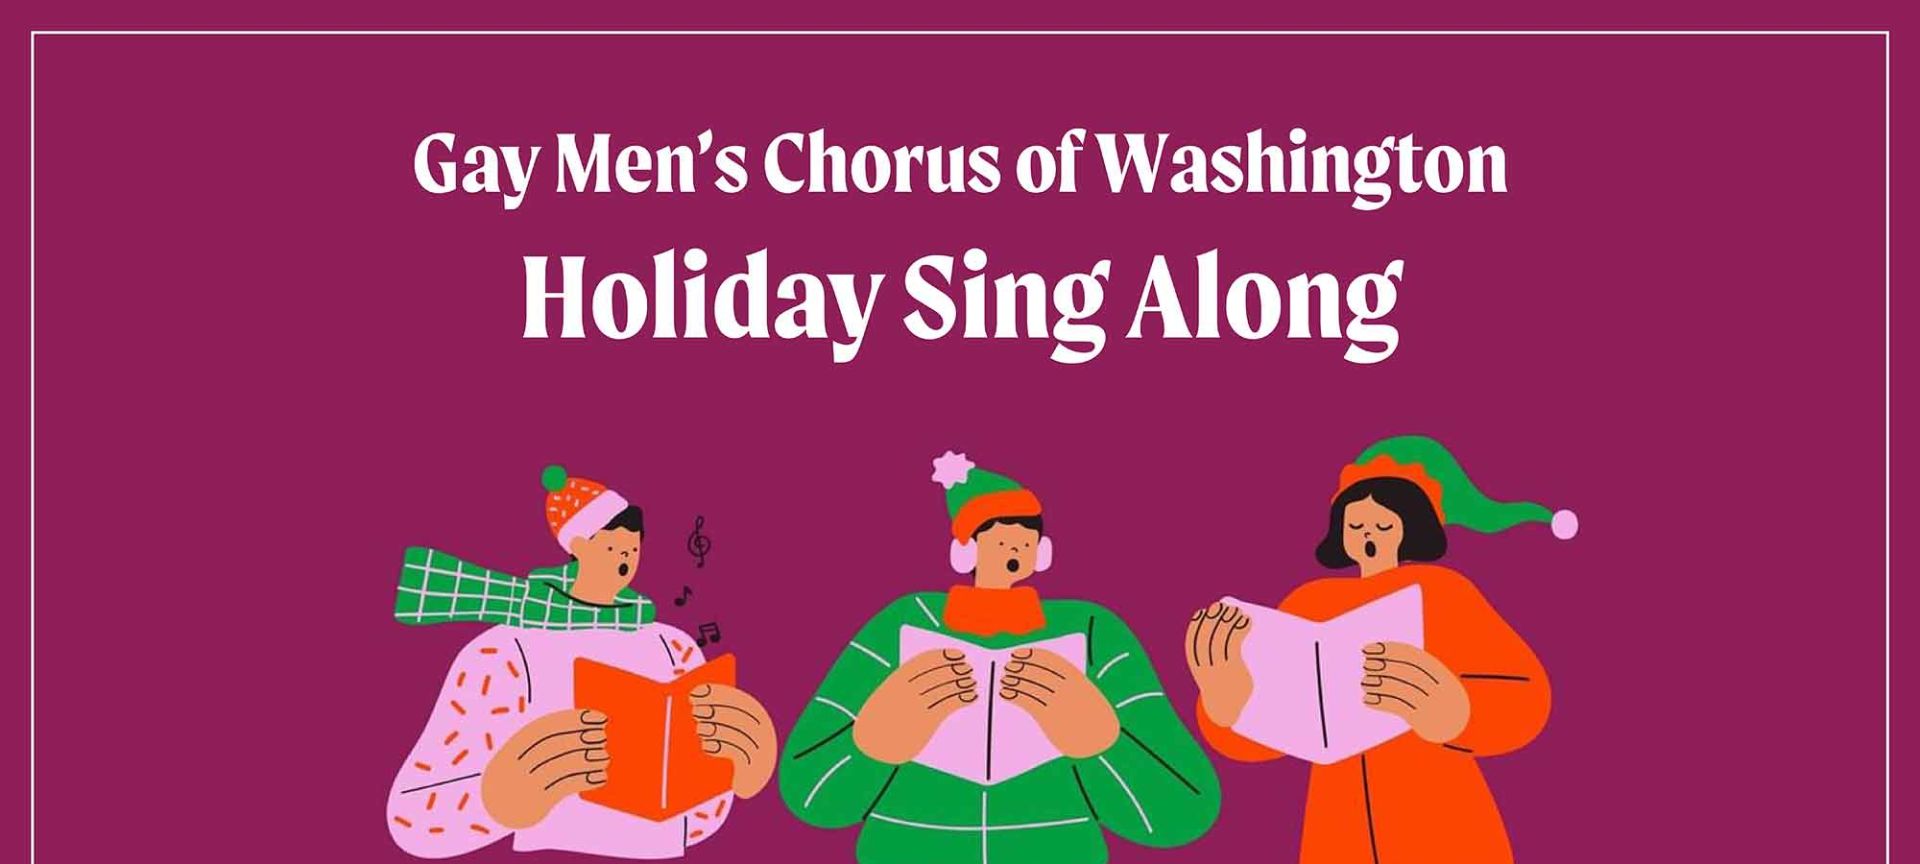 Gay Men's Chorus of Washington Holiday Sing Along